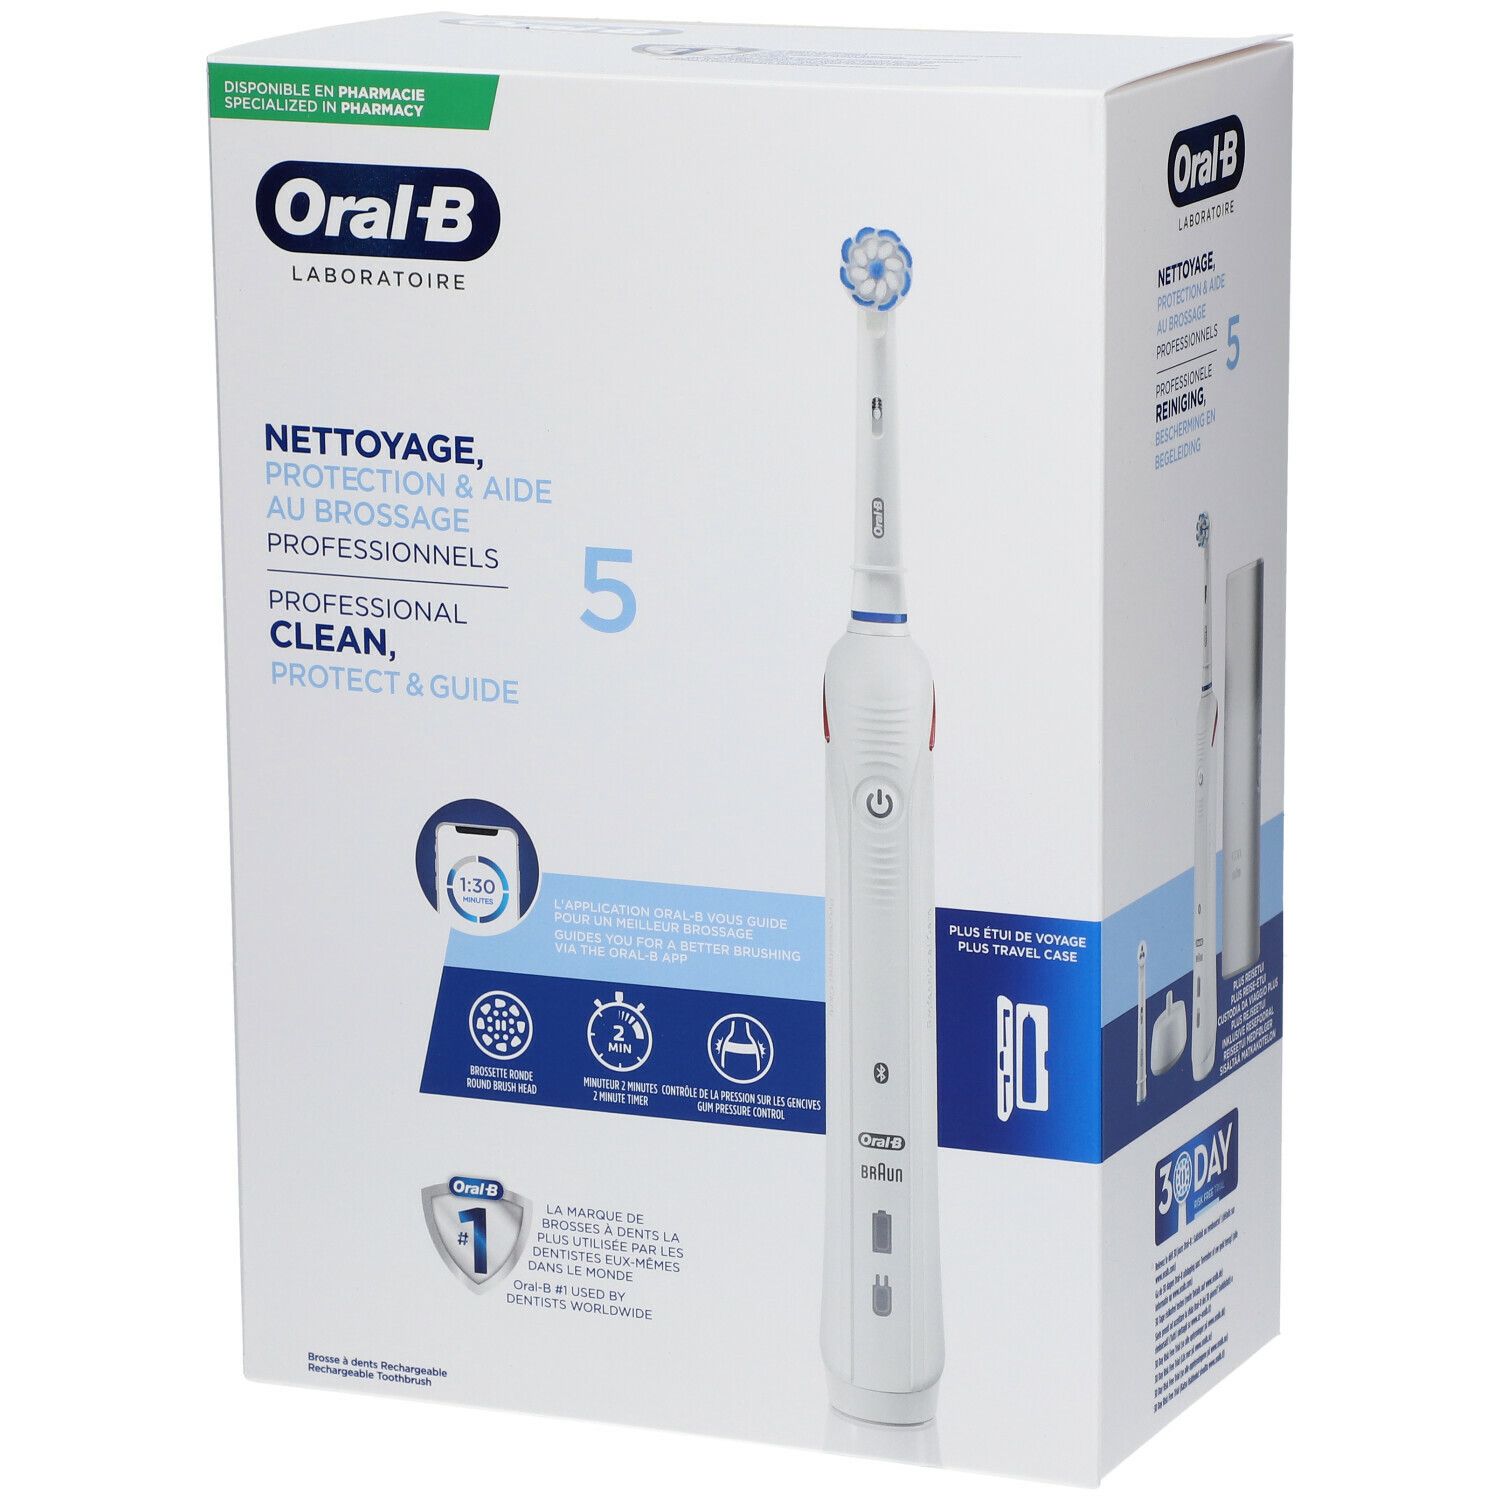 Oral-B Laboratoire Nettoyage Professionnel et Protection 3